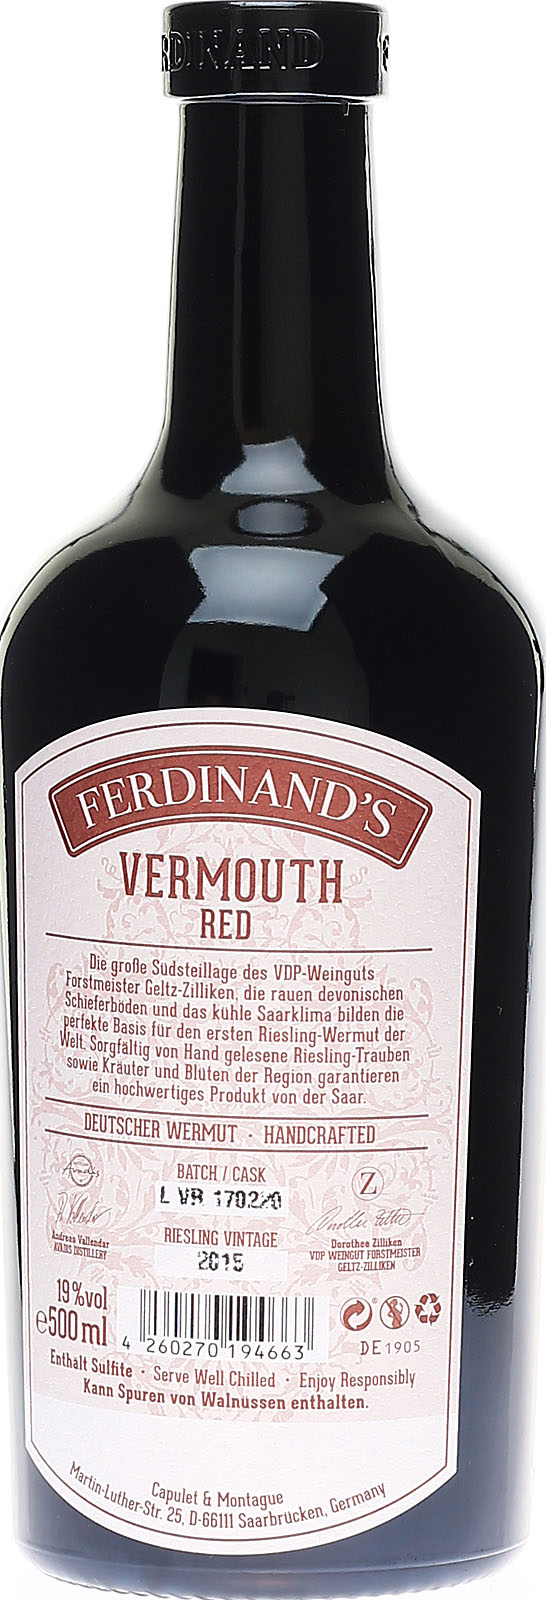 Ferdinand's Red Vermouth, hochwertiger Wermut aus Deuts